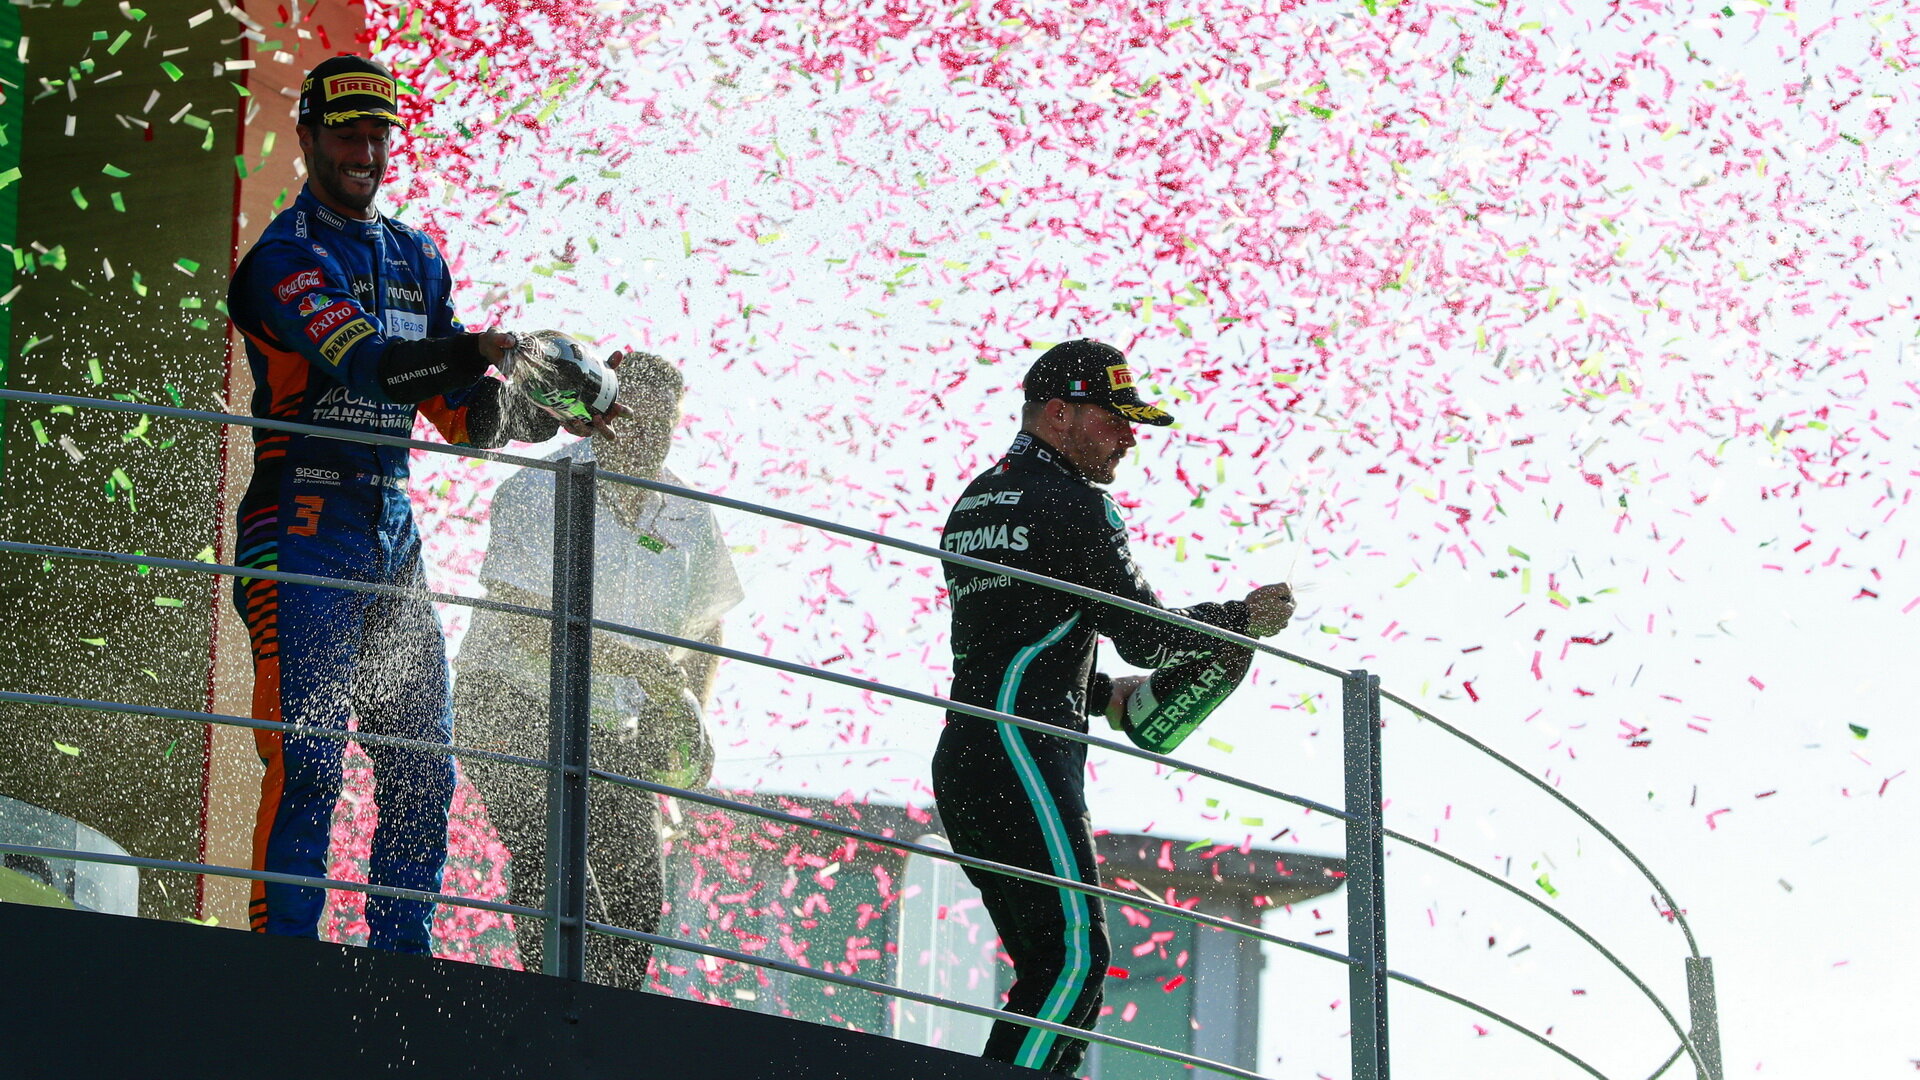 Daniel Ricciardo a Valtteri Bottas slaví na pódiu po závodě na Monze